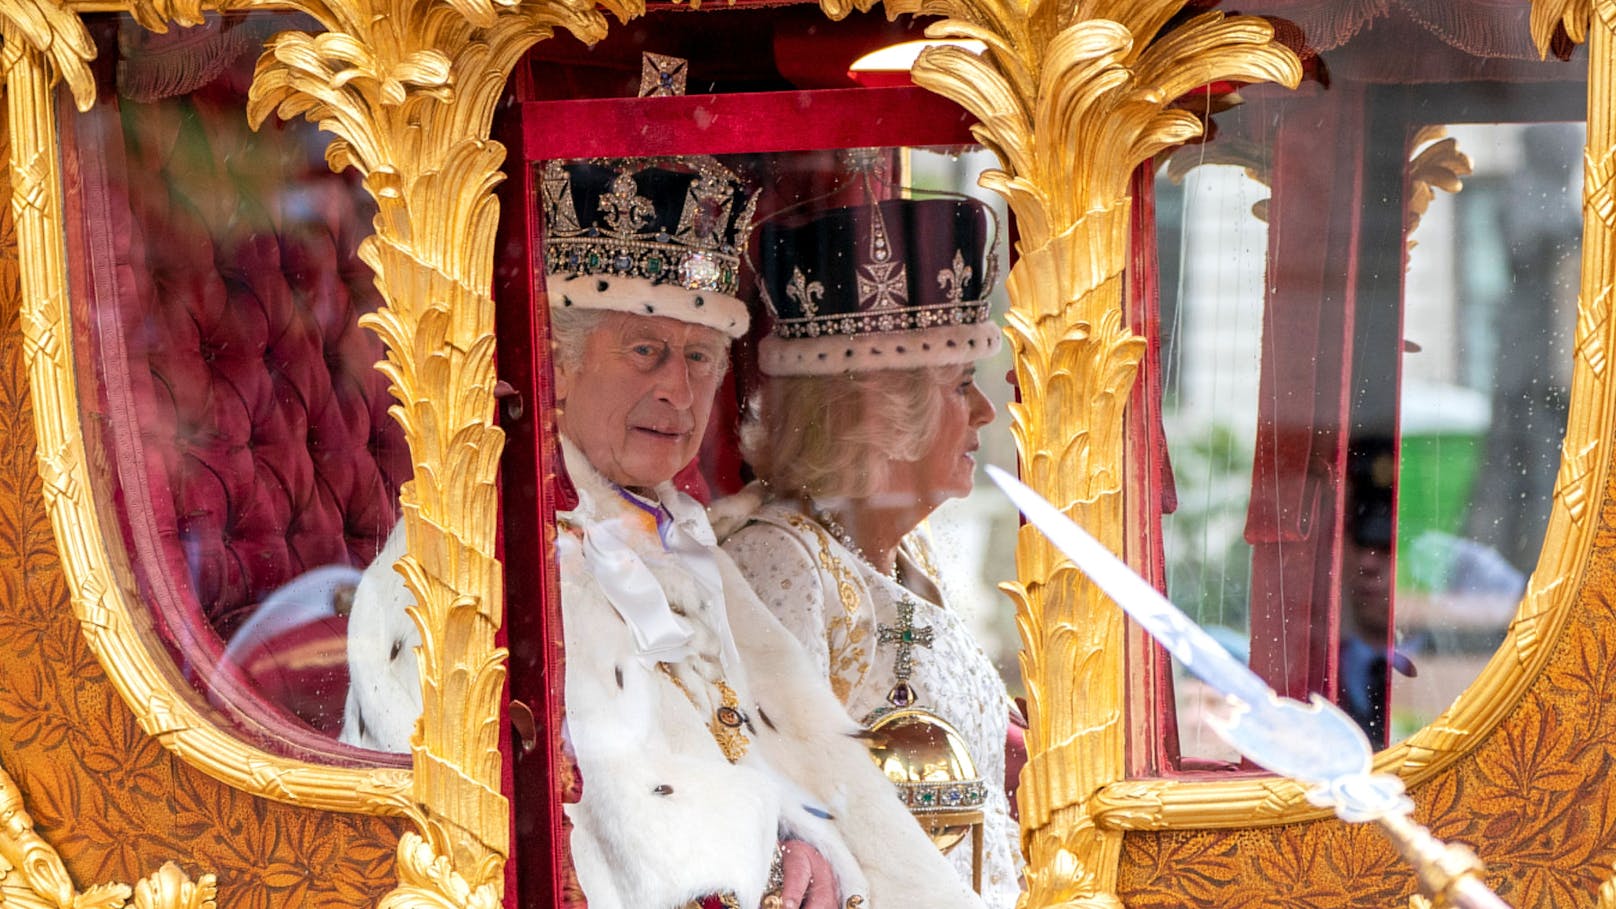 König Charles und Camilla wurden gemeinsam gekrönt.